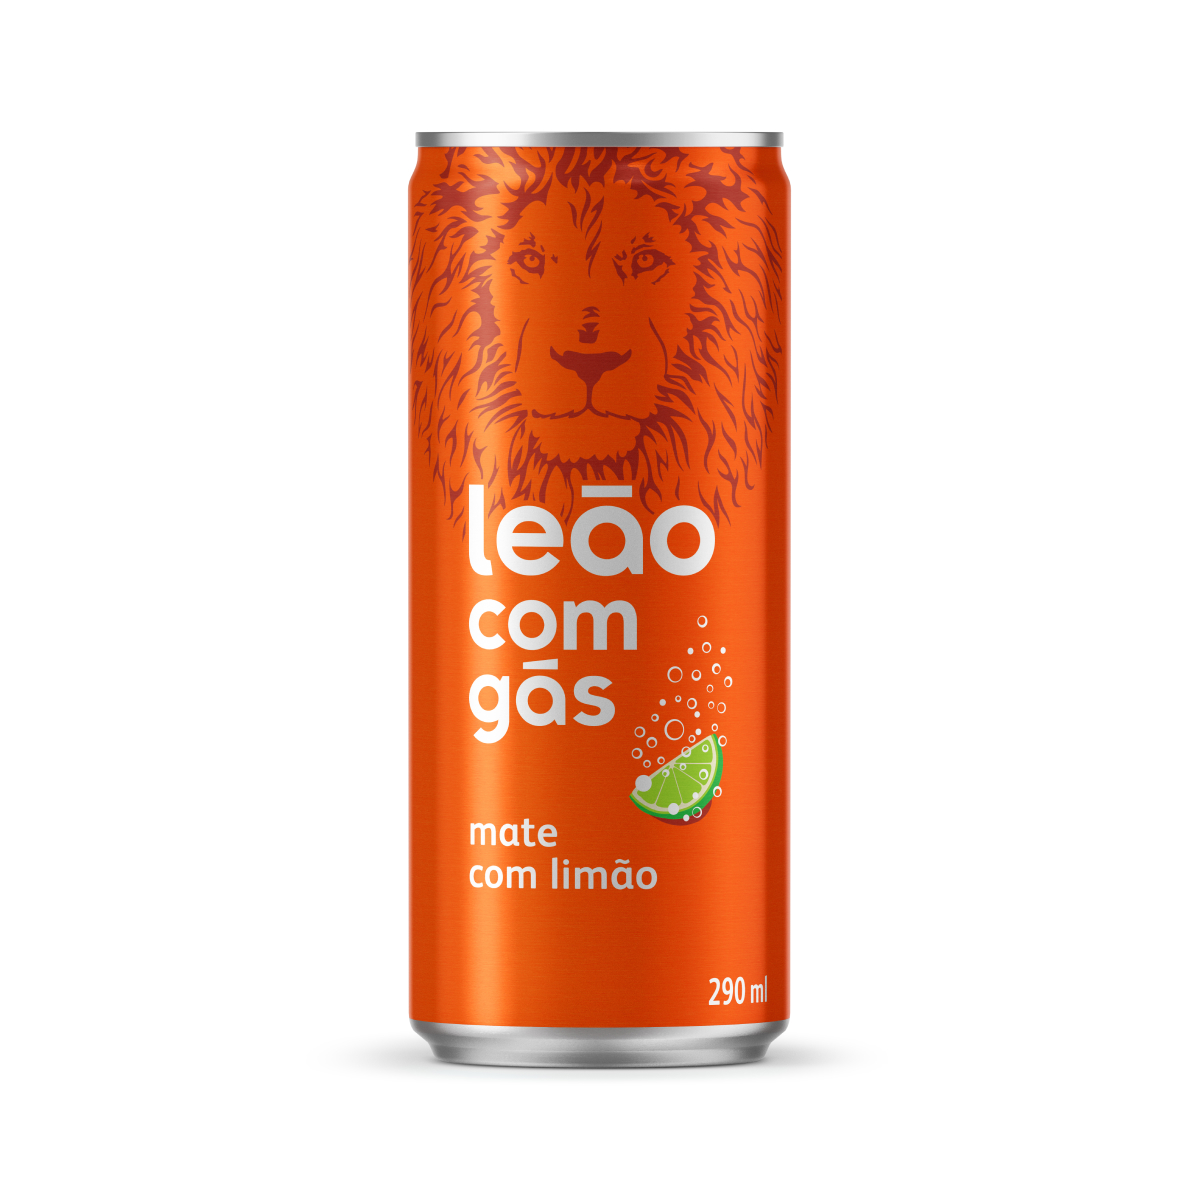 Leão com gás - limão : uma lata de refrigerante com o logo da marca de Chás Leão, com sabor de lima-limão.